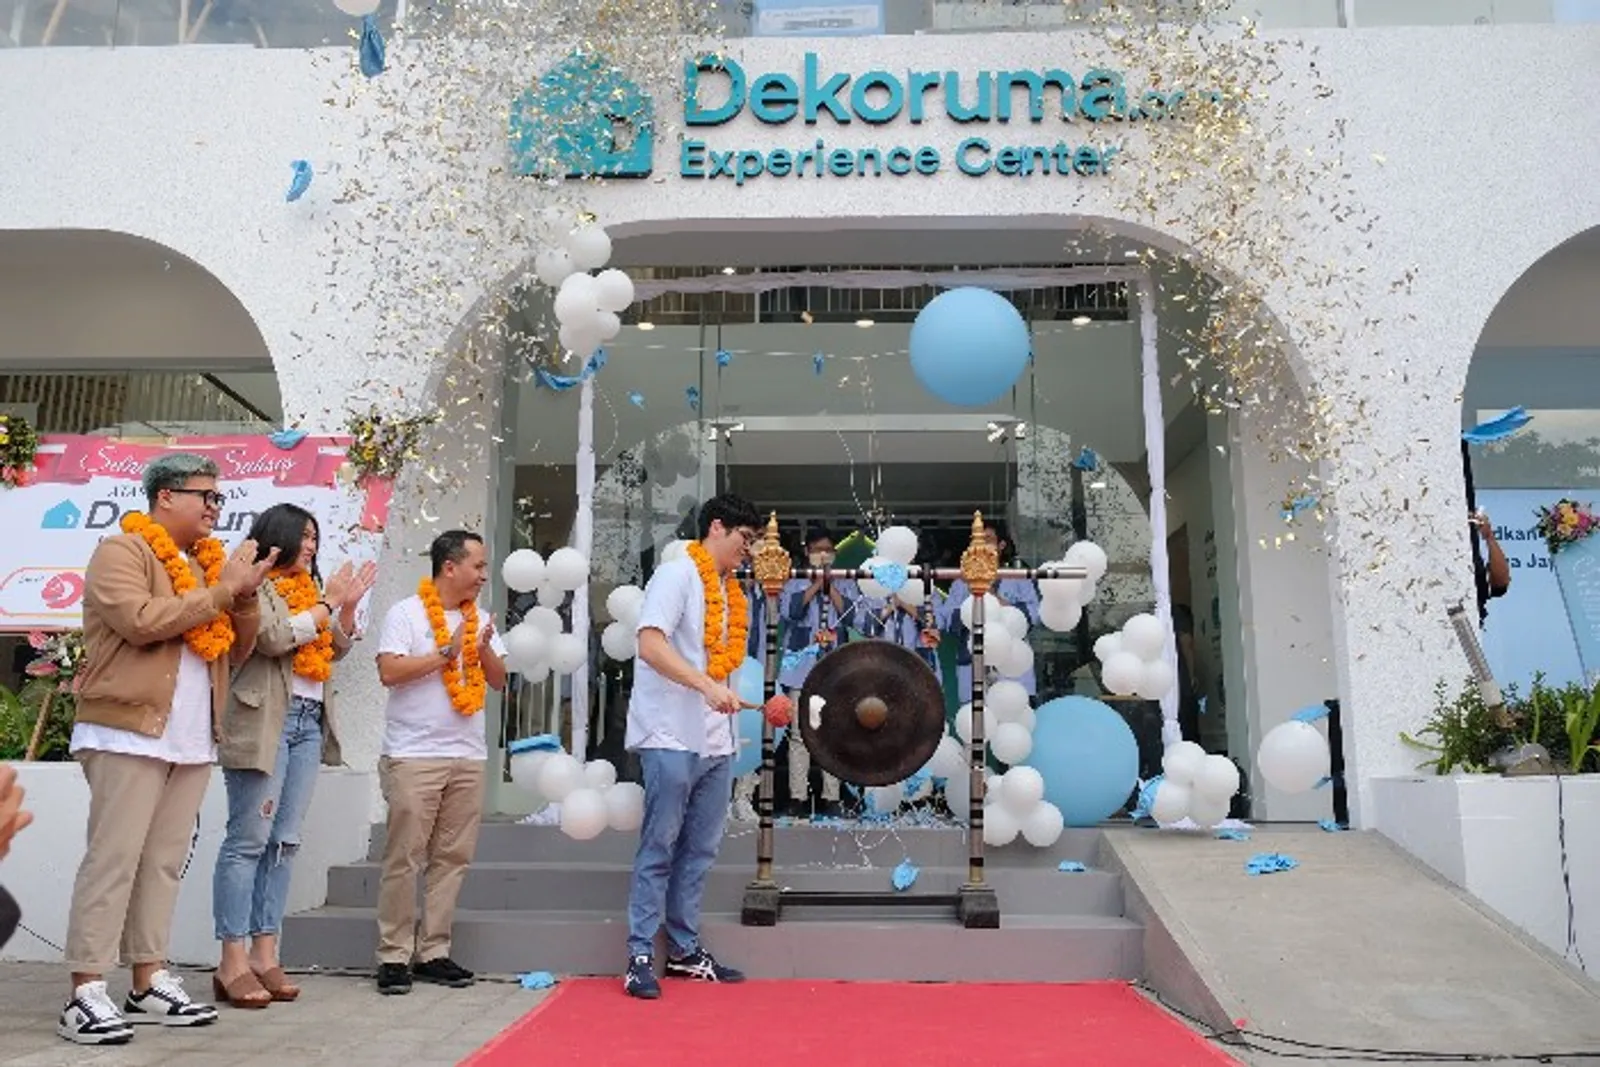 Ekspansi ke Bali, Dekoruma Experience Center Buka Showroom ke-20!